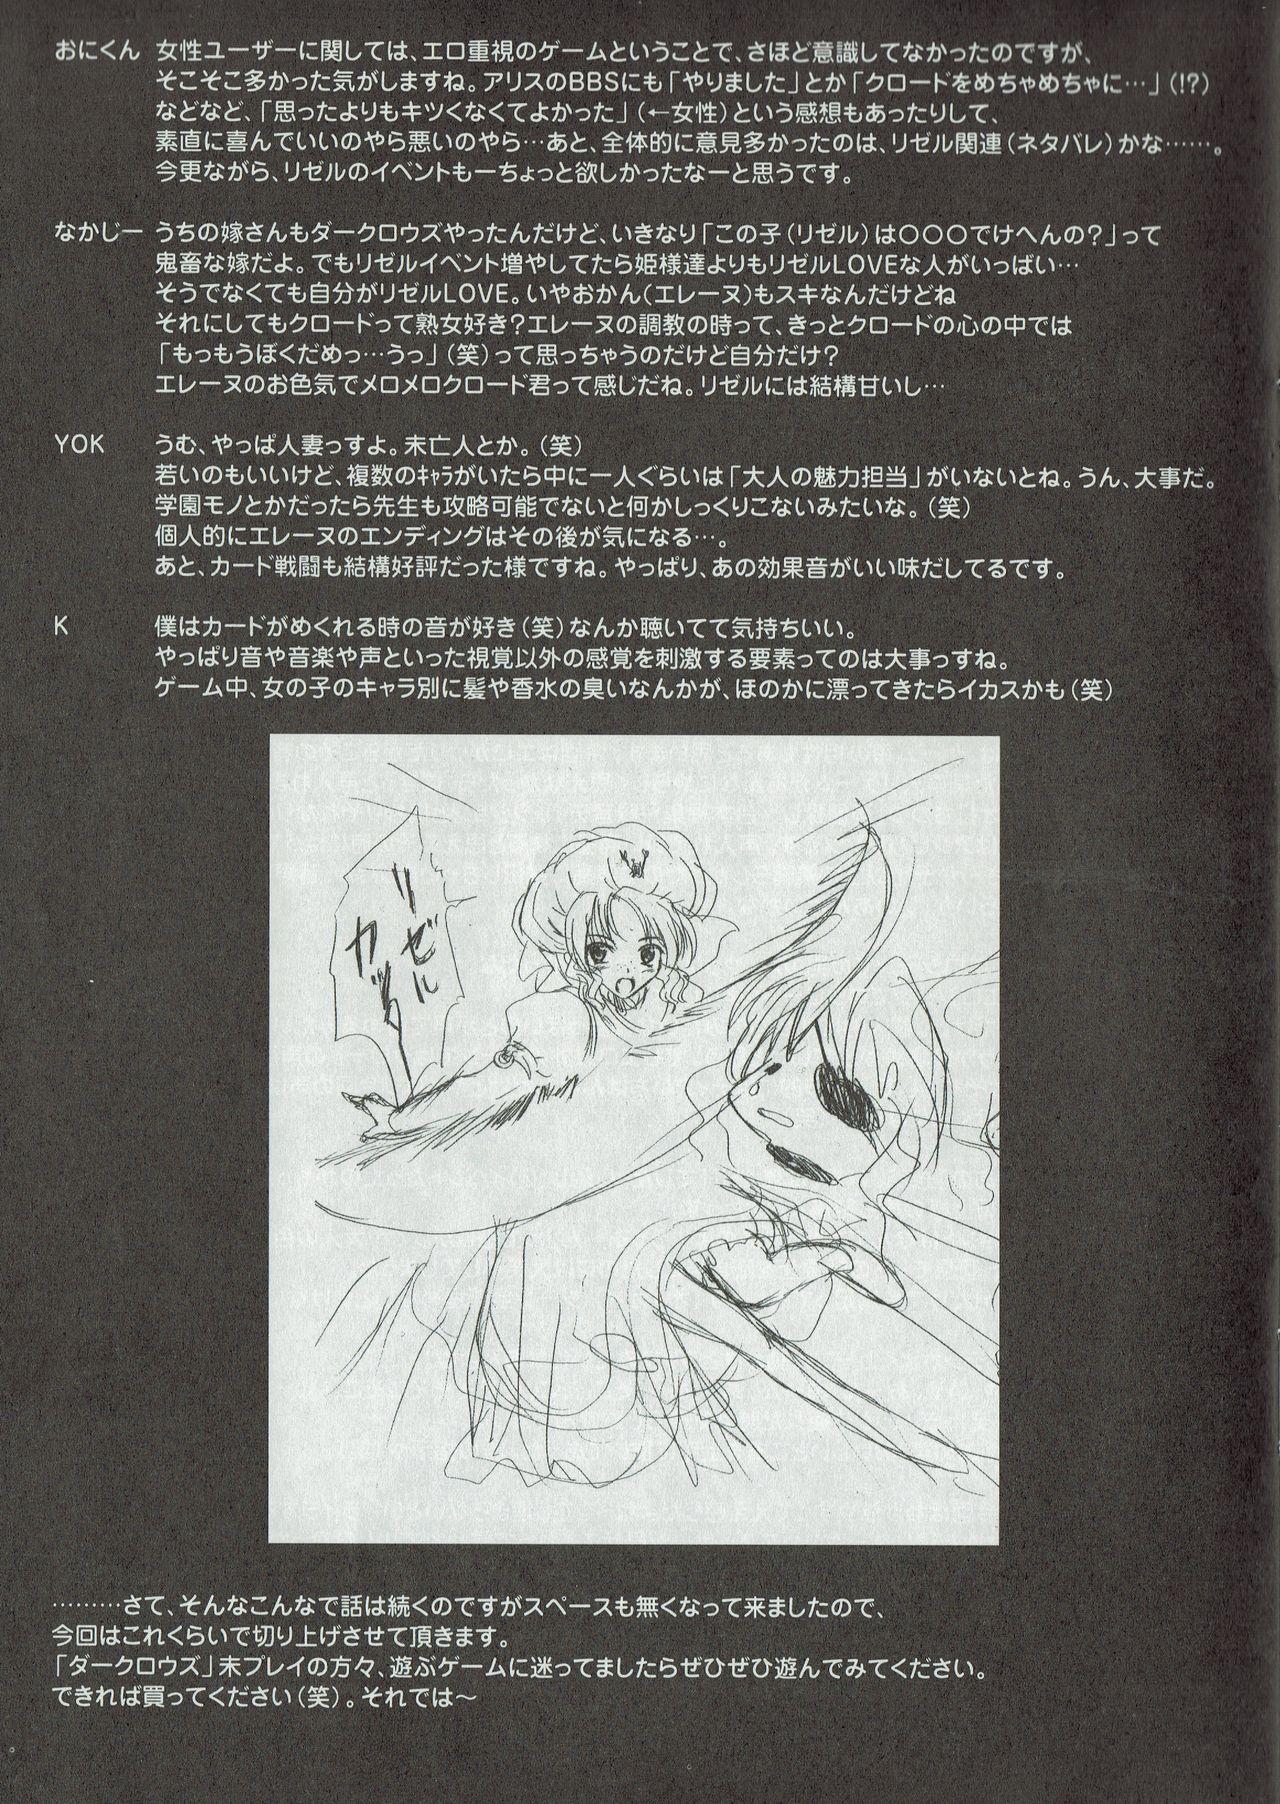 Arisu no Denchi Bakudan Vol. 10 9